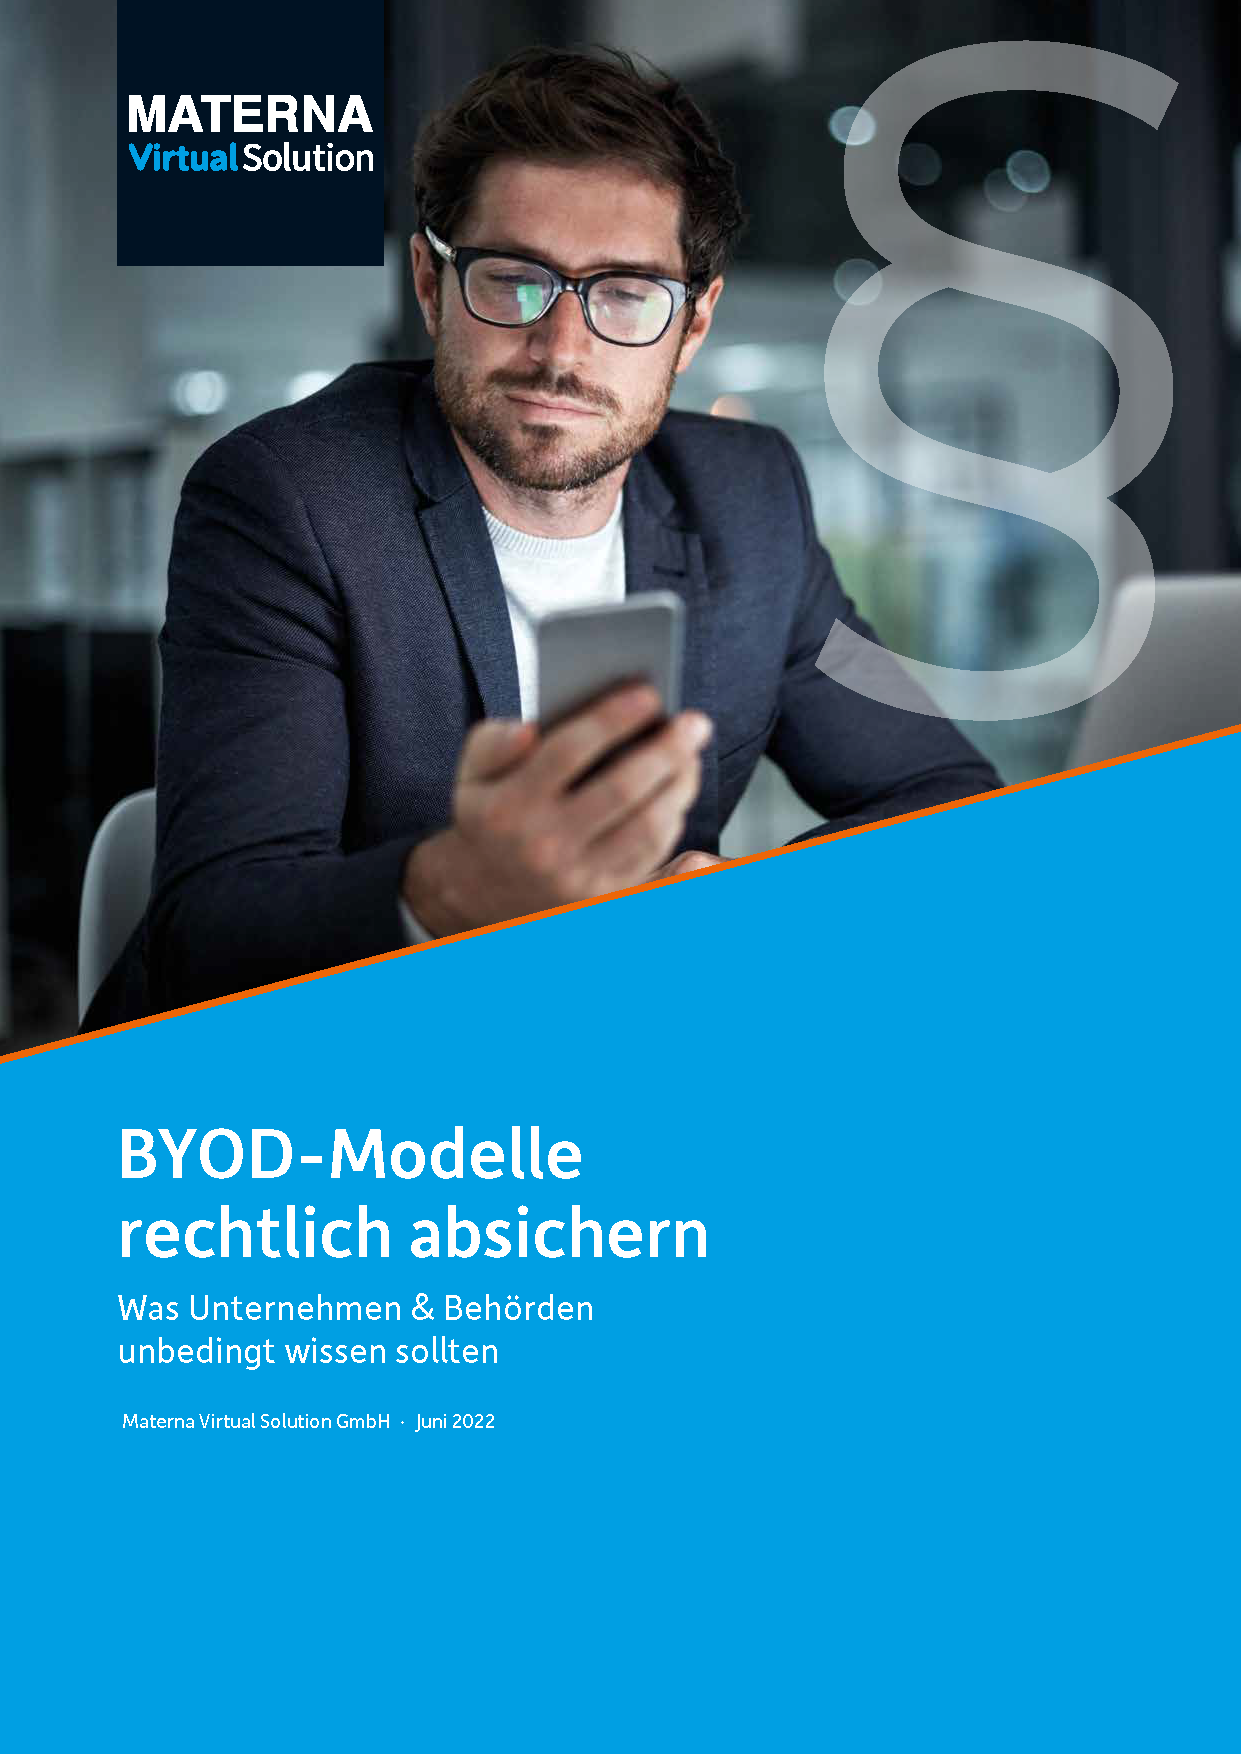 Whitepaper "BYOD-Modelle rechtlich absichern"